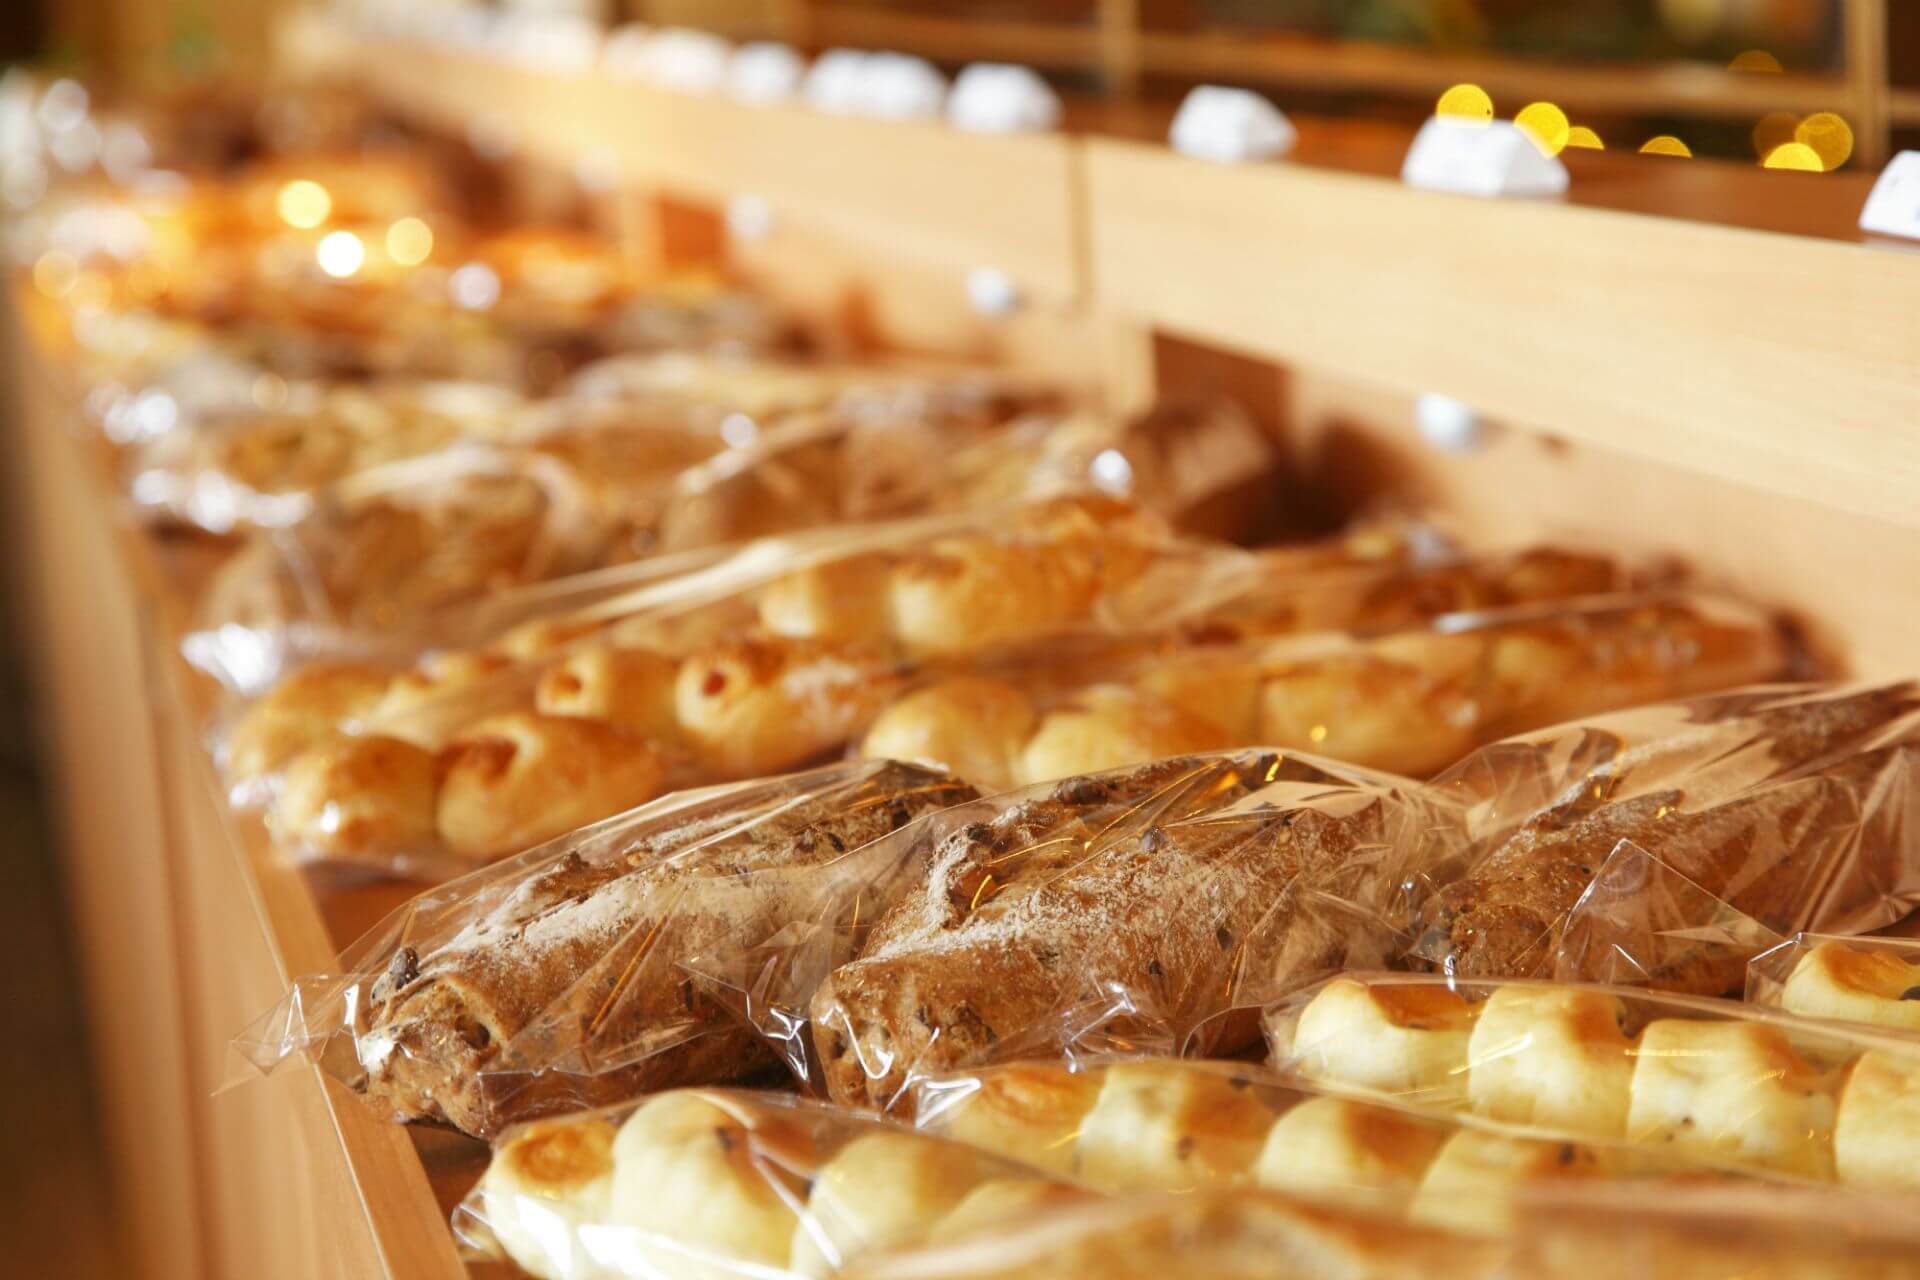 糖果和面包与北海道成份在大公园大樽